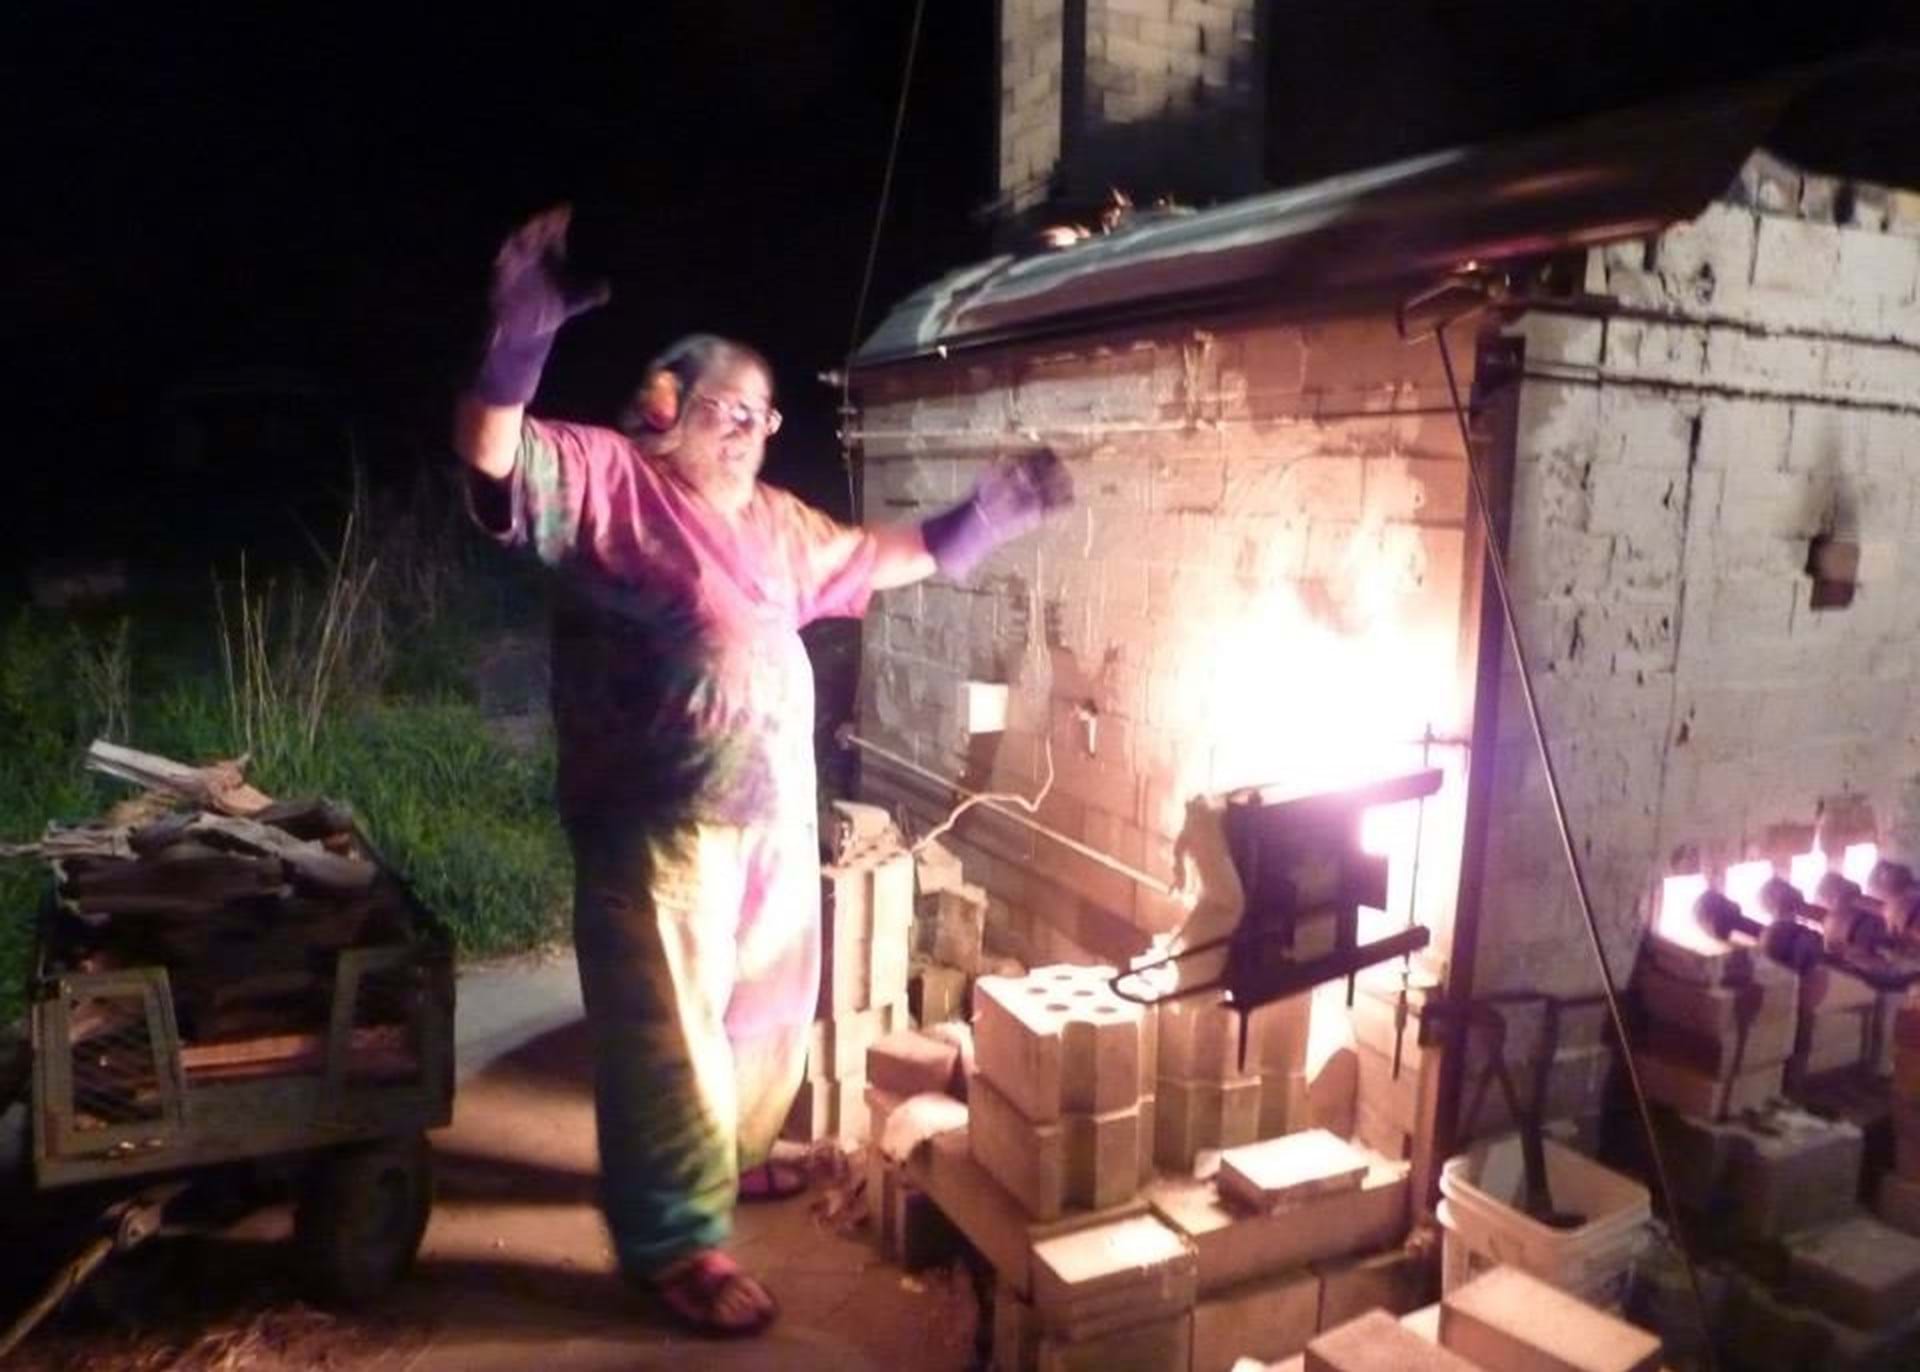 Firing up the kiln